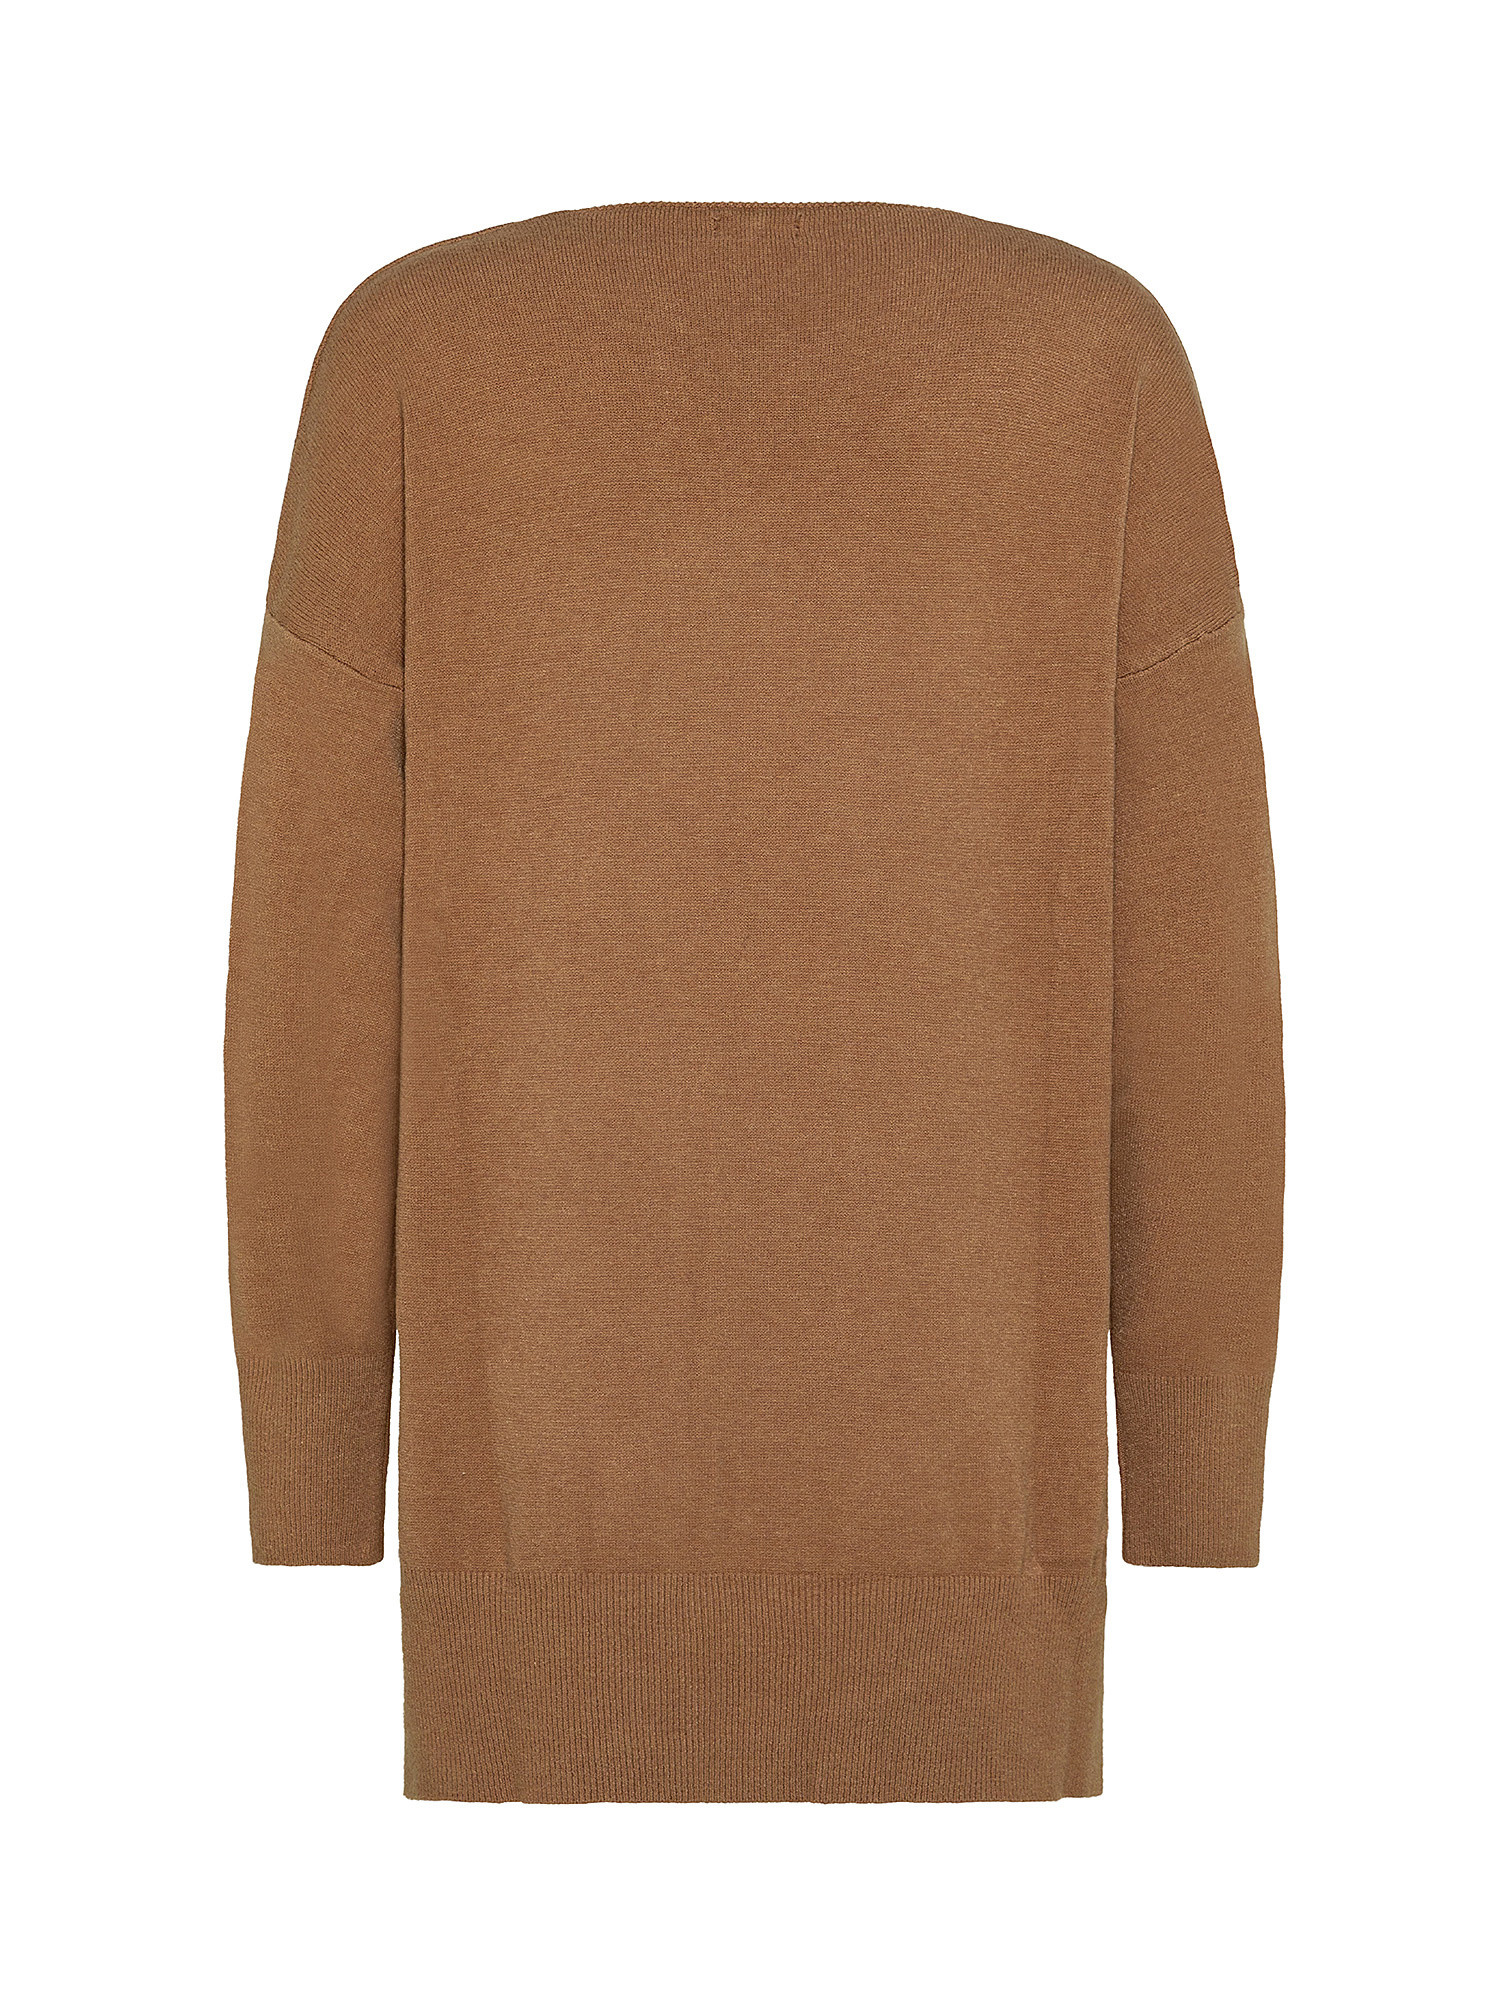 Oversized sweater with "V" neckline, Camel, large image number 1